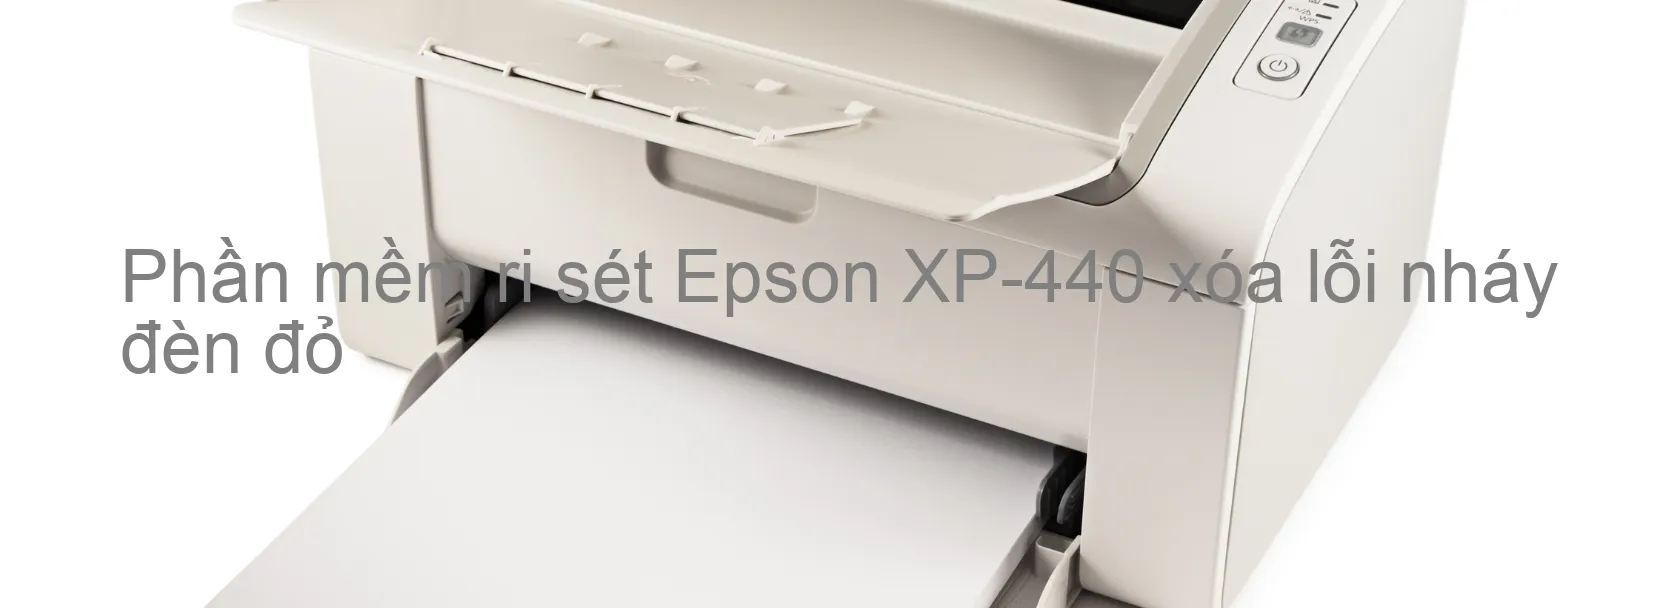 Phần mềm reset Epson XP-440 xóa lỗi nháy đèn đỏ